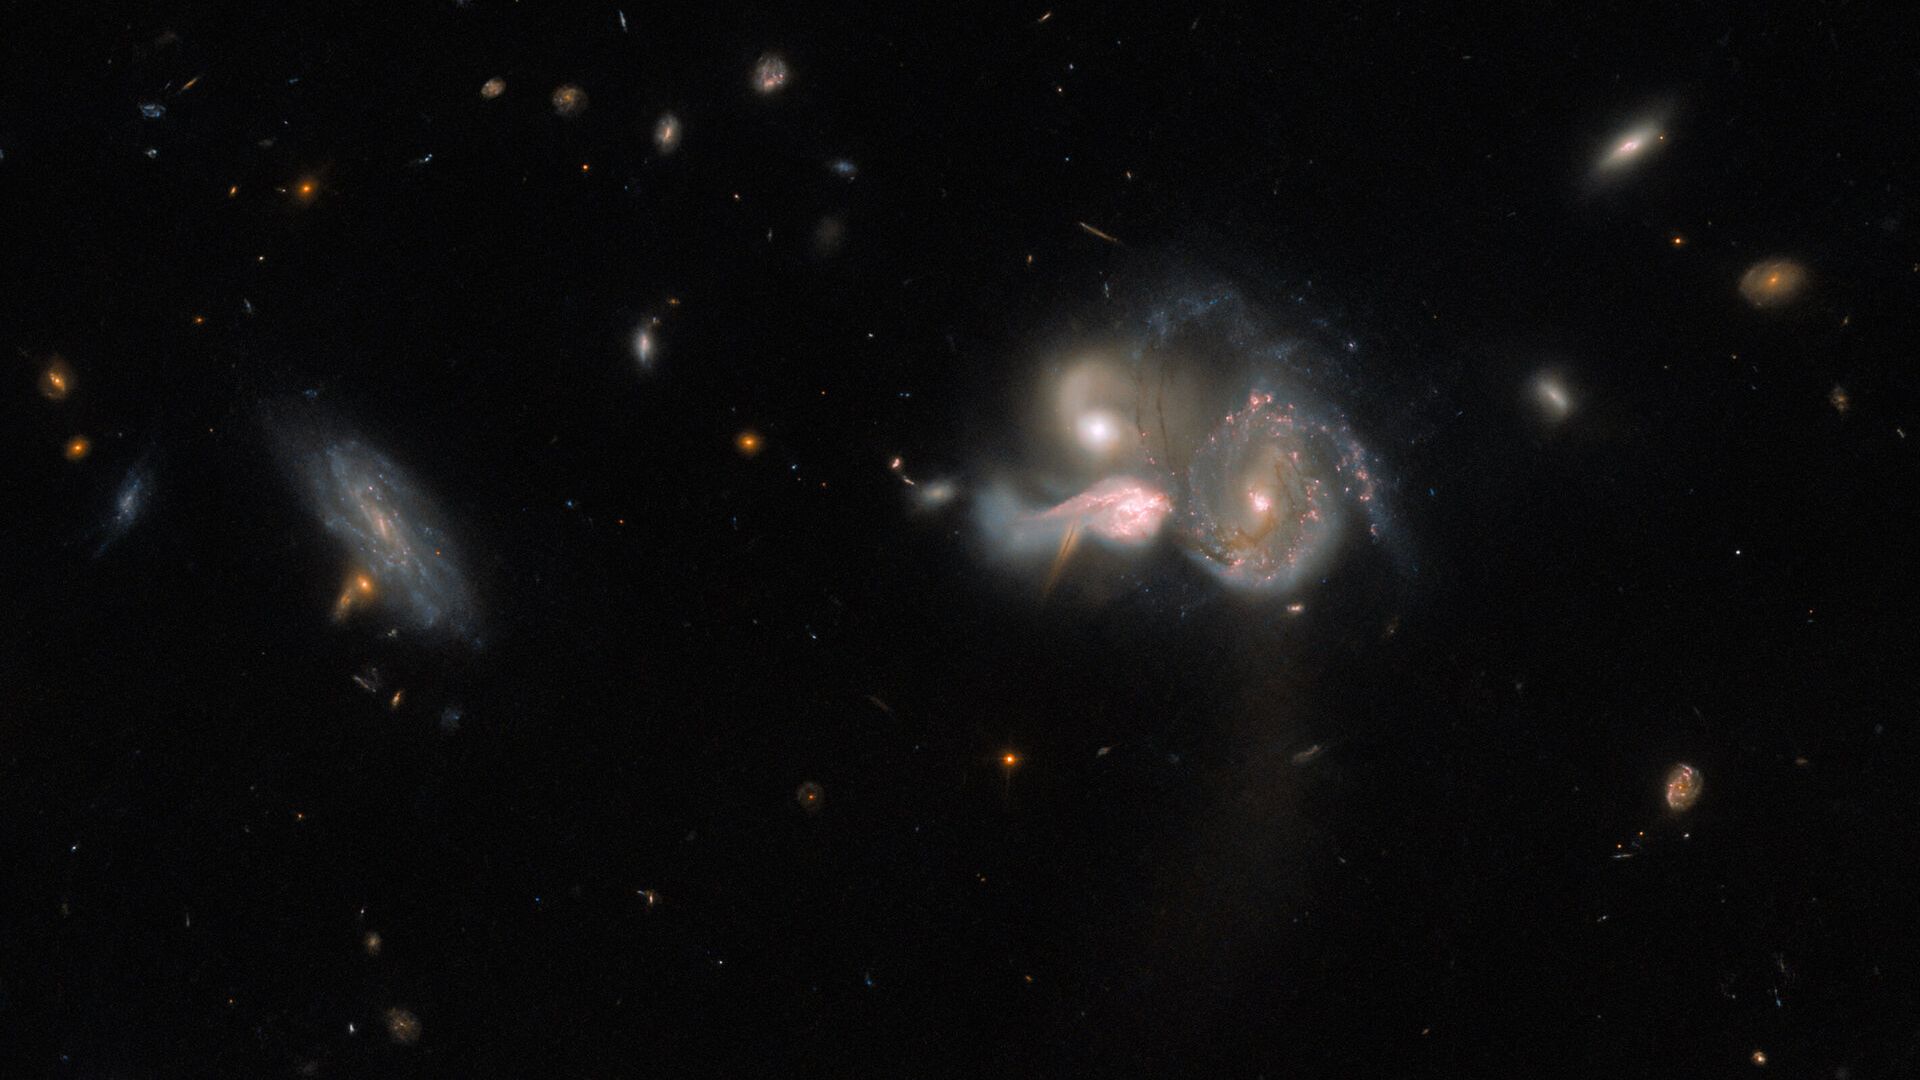 Este trio de galáxias está localizado na Constelação de Bootes (“O Boieiro”), em rota de colisão. Elas acabarão por se fundir numa galáxia maior, distorcendo as estruturas em espiral por meio da interação gravitacional. Conhecido por SDSSCGB 10189, o trio é uma combinação relativamente rara, já que as galáxias estão a apenas 50 mil anos-luz uma da outra. Embora possa parecer uma distância avantajada, pode-se dizer que elas estão extremamente próximas. Para se ter uma ideia, Andrômeda, a galáxia mais próxima da nossa Via Láctea, está a mais de 2,5 milhões de anos-luz de distância